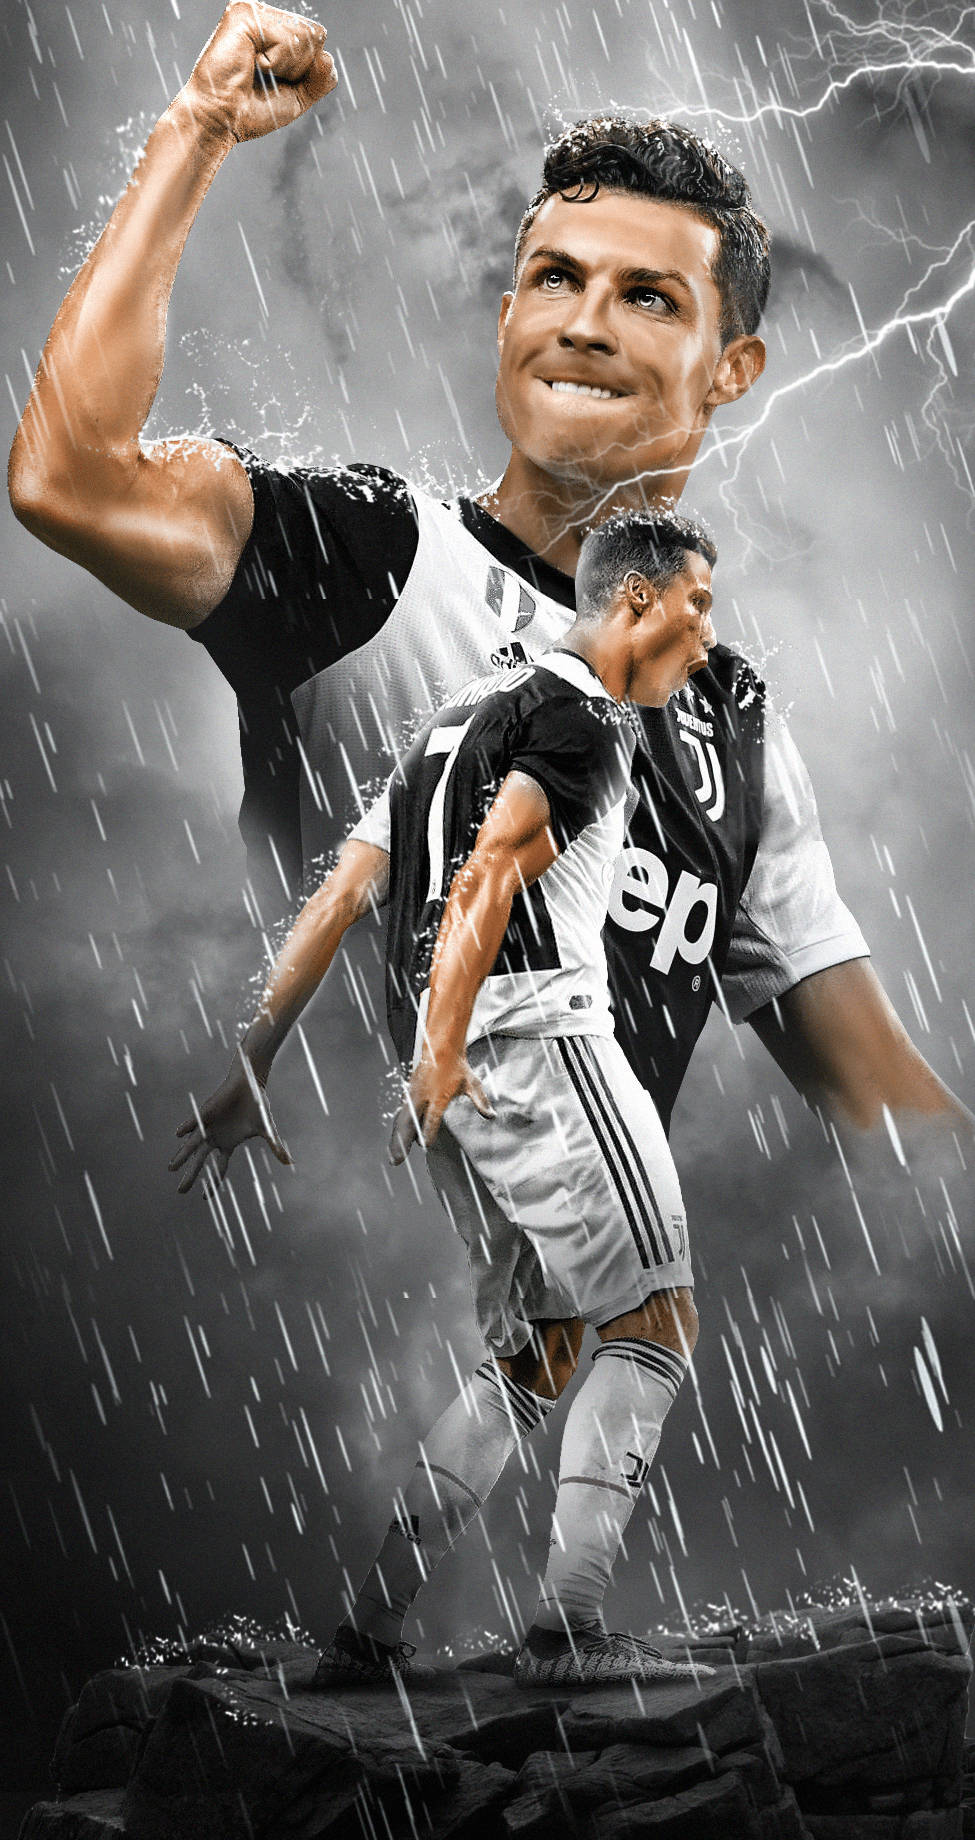 Download Amazing Juventus Team Member Ronaldo Iphone Wallpaper | Wallpapers .com